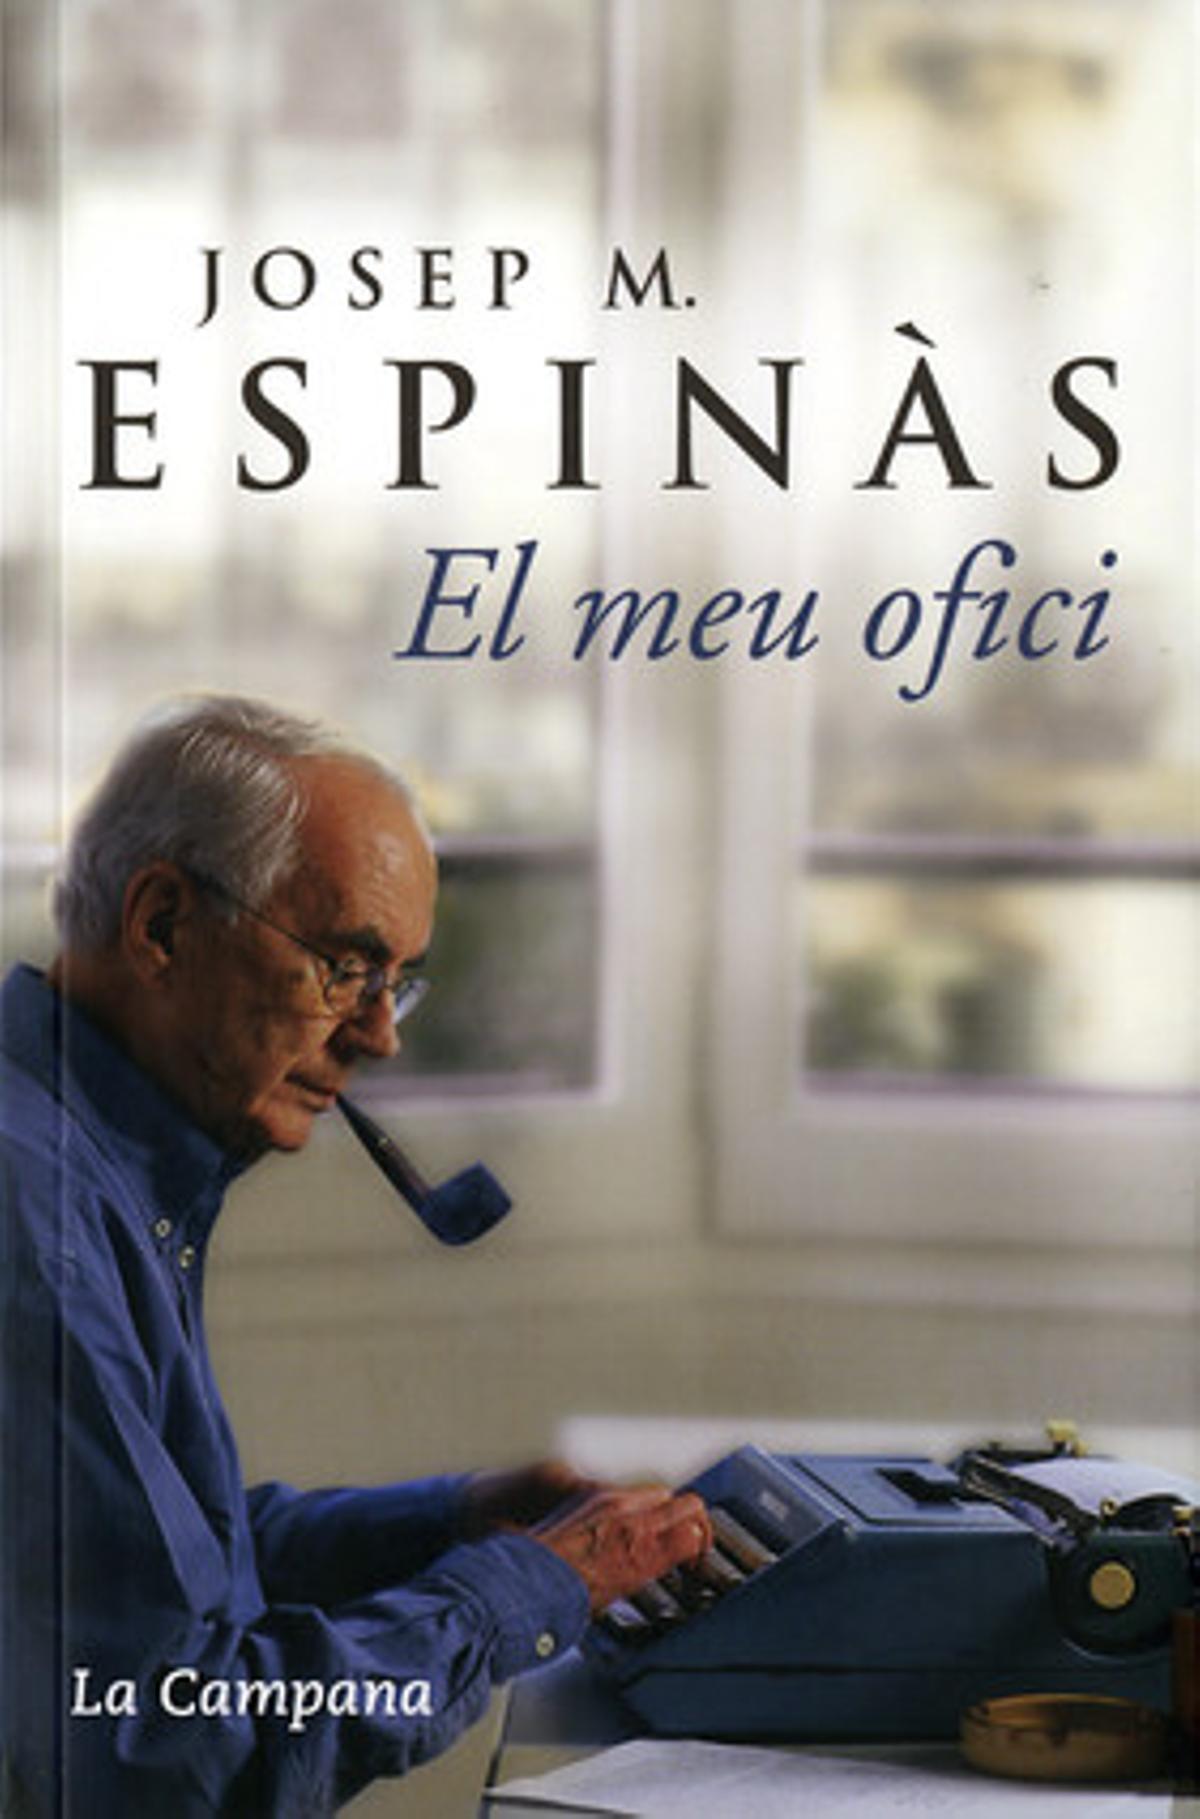 Portada del llibre ’El meu ofici’ de Josep Maria Espinàs.